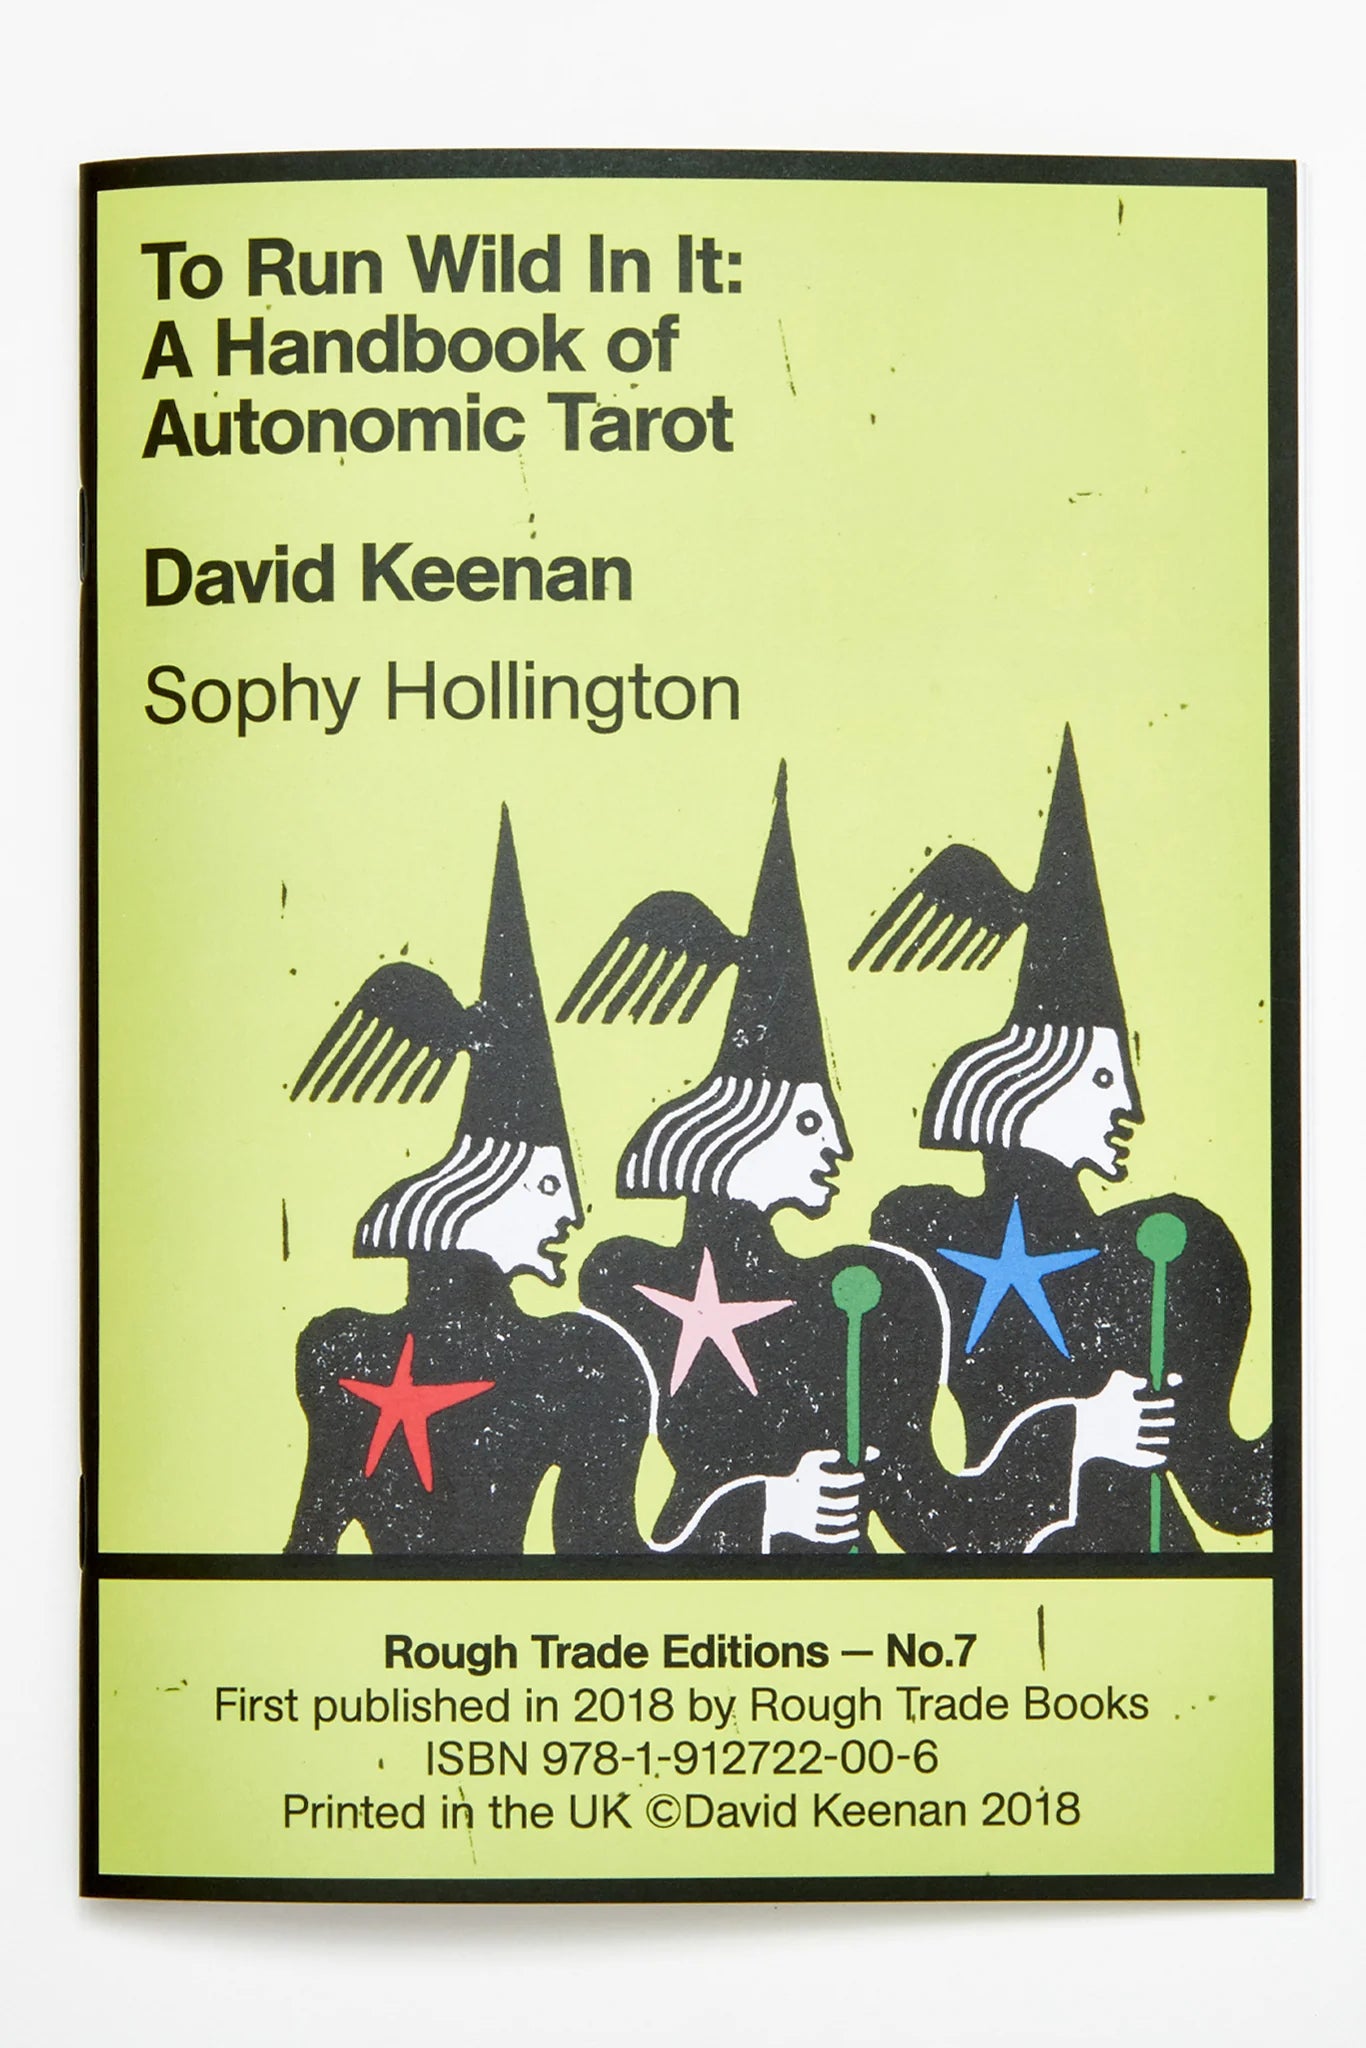 To Run Wild In It: A Handbook of Autonomic Tarot